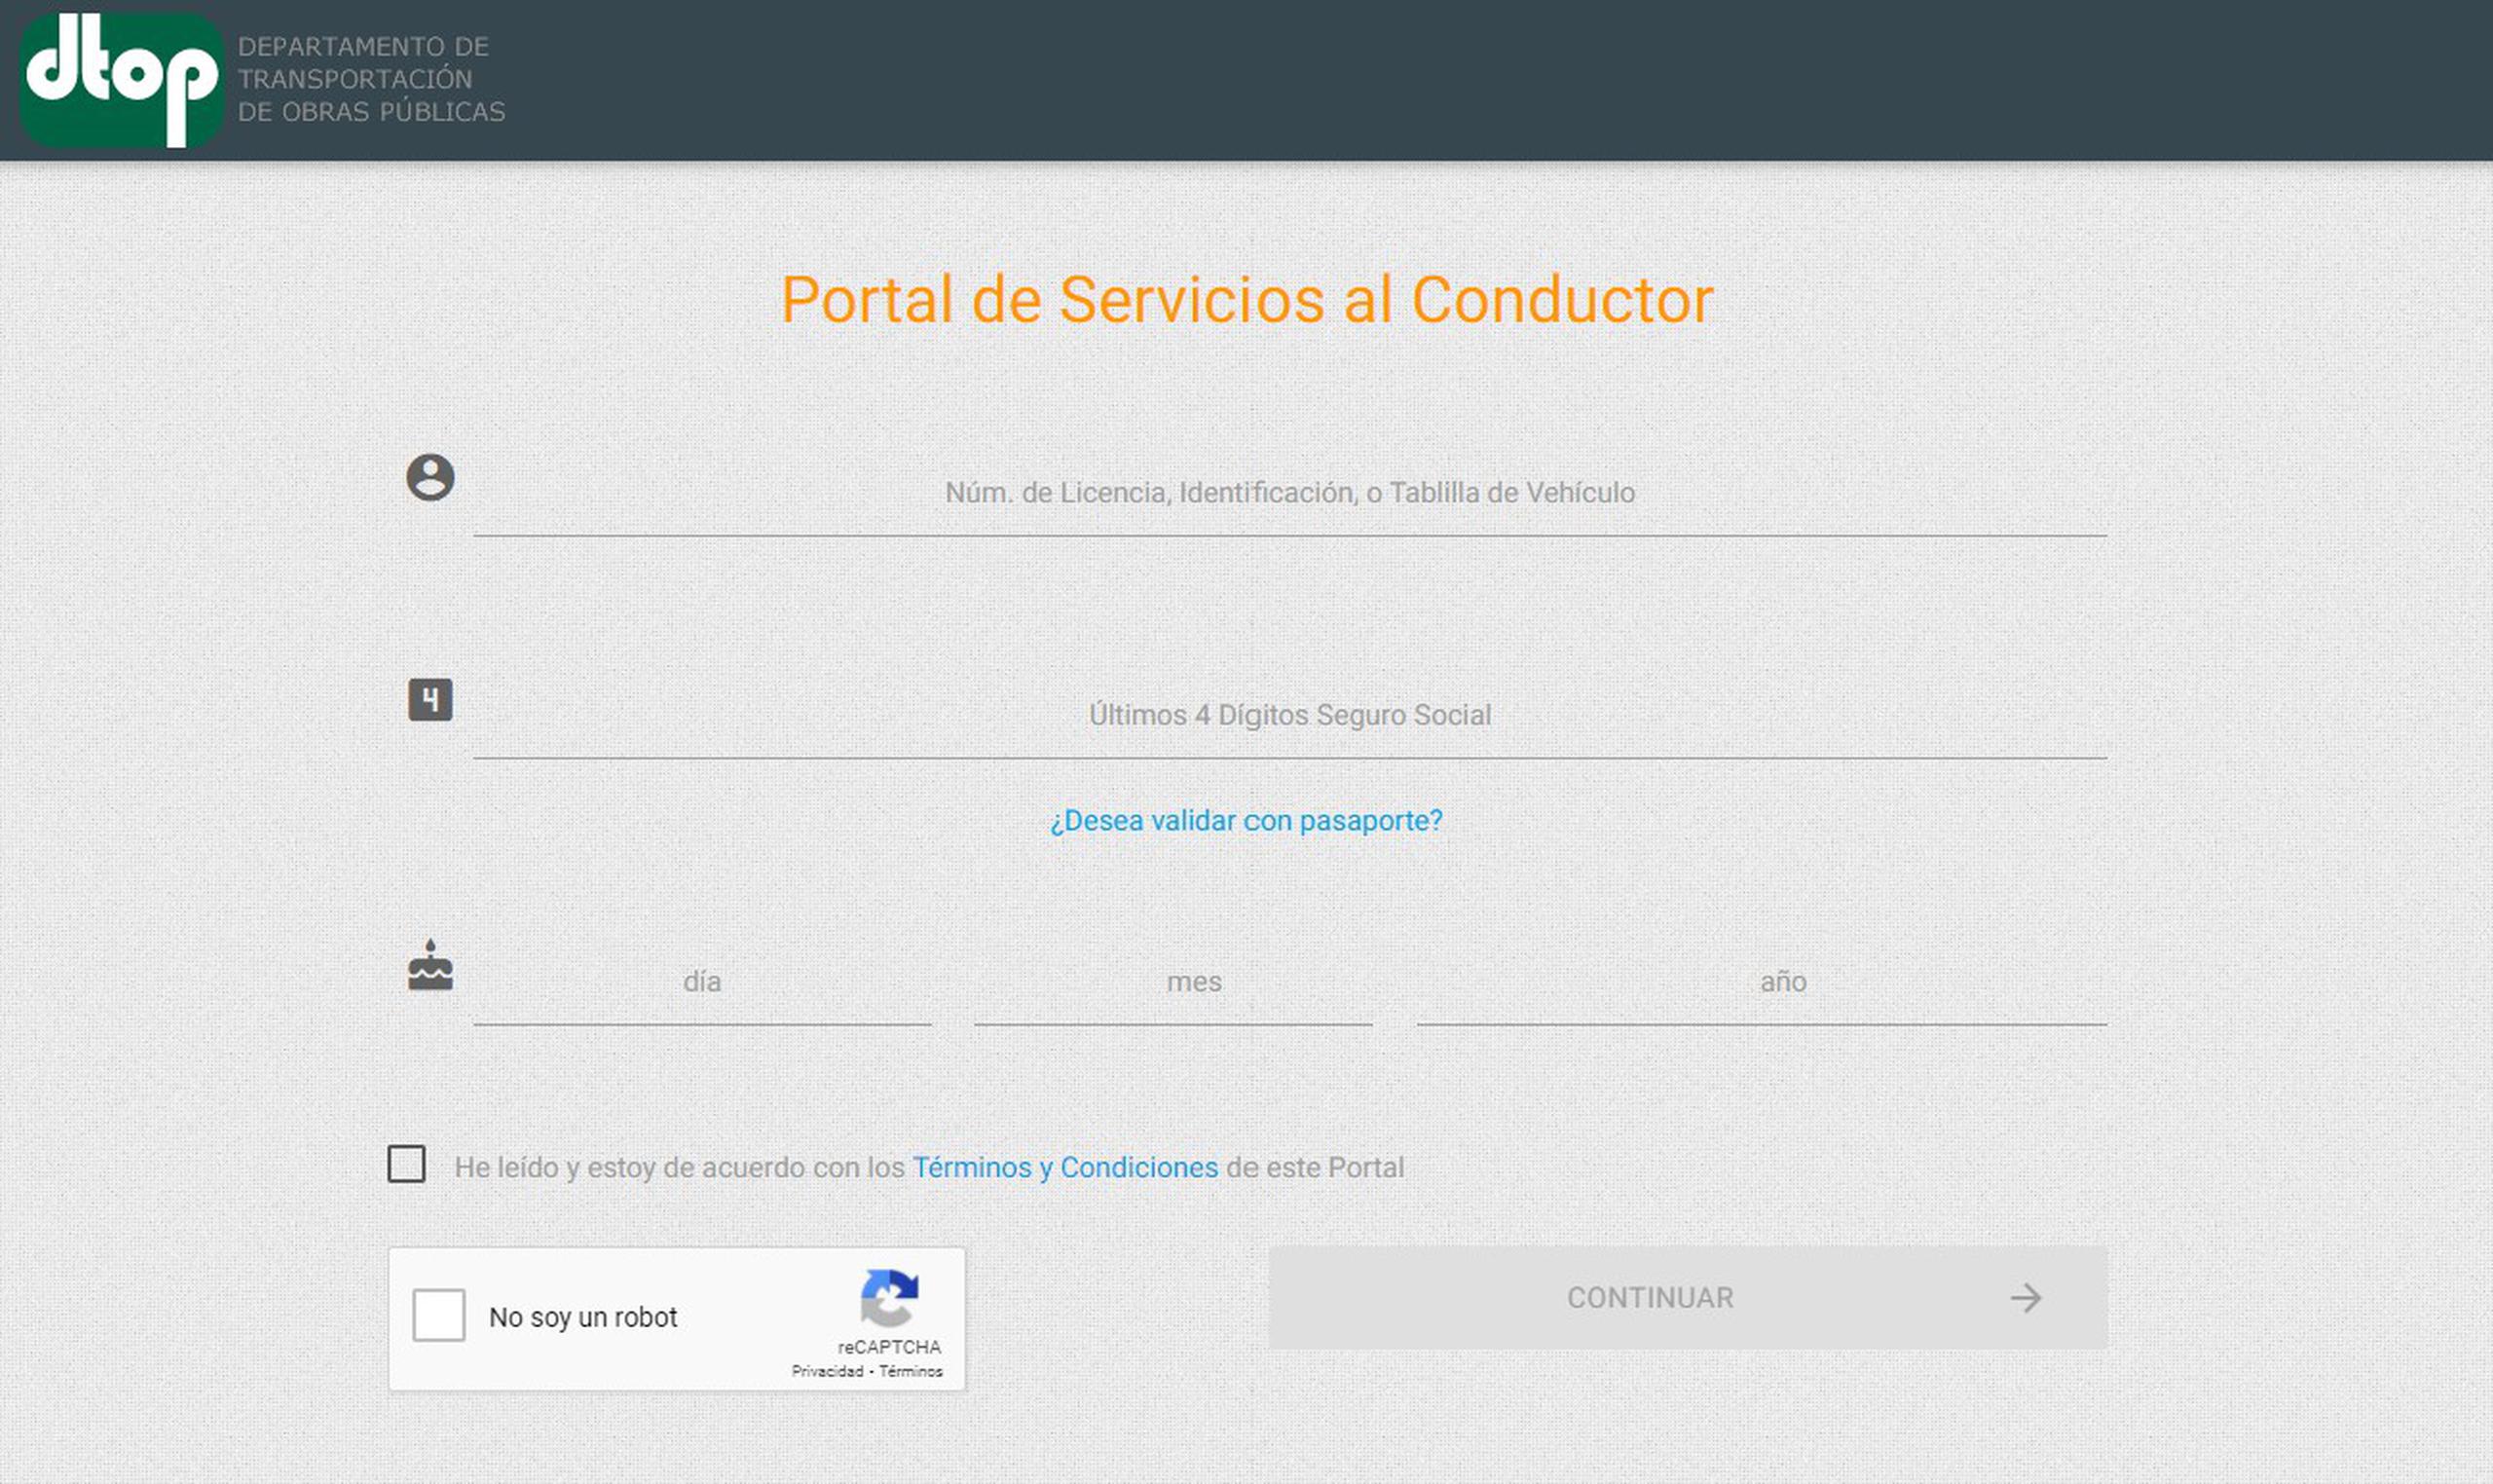 Portal de Servicios al Conductor del Departamento de Transportación y Obras Públicas.